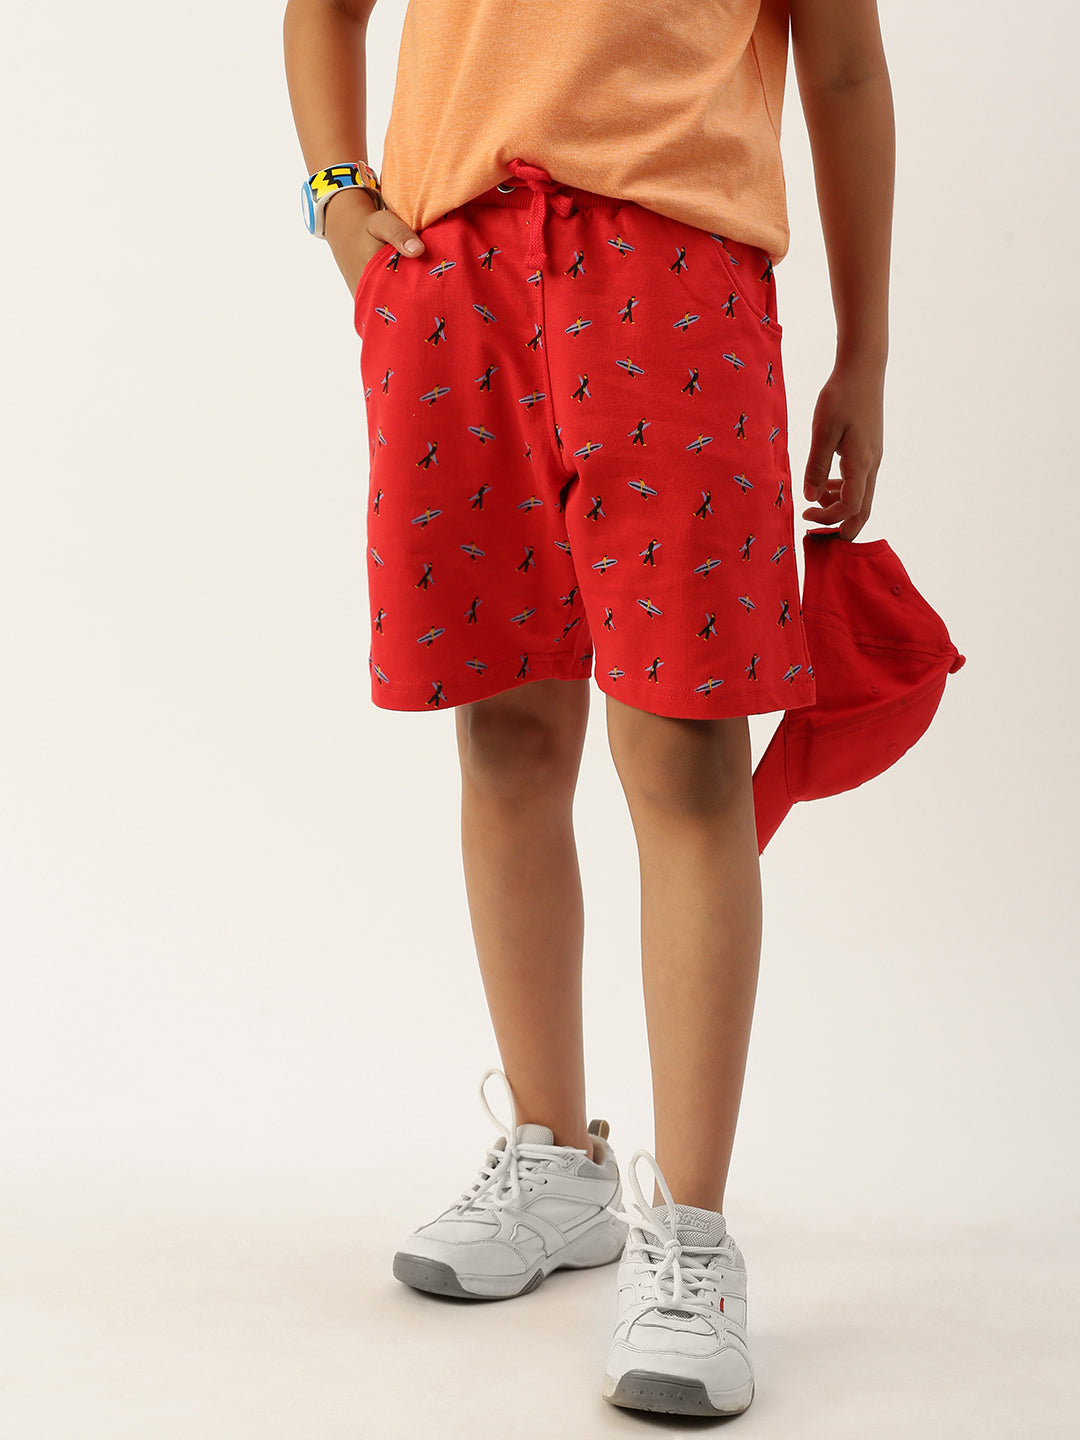 PIPIN Boys Printed Shorts Red